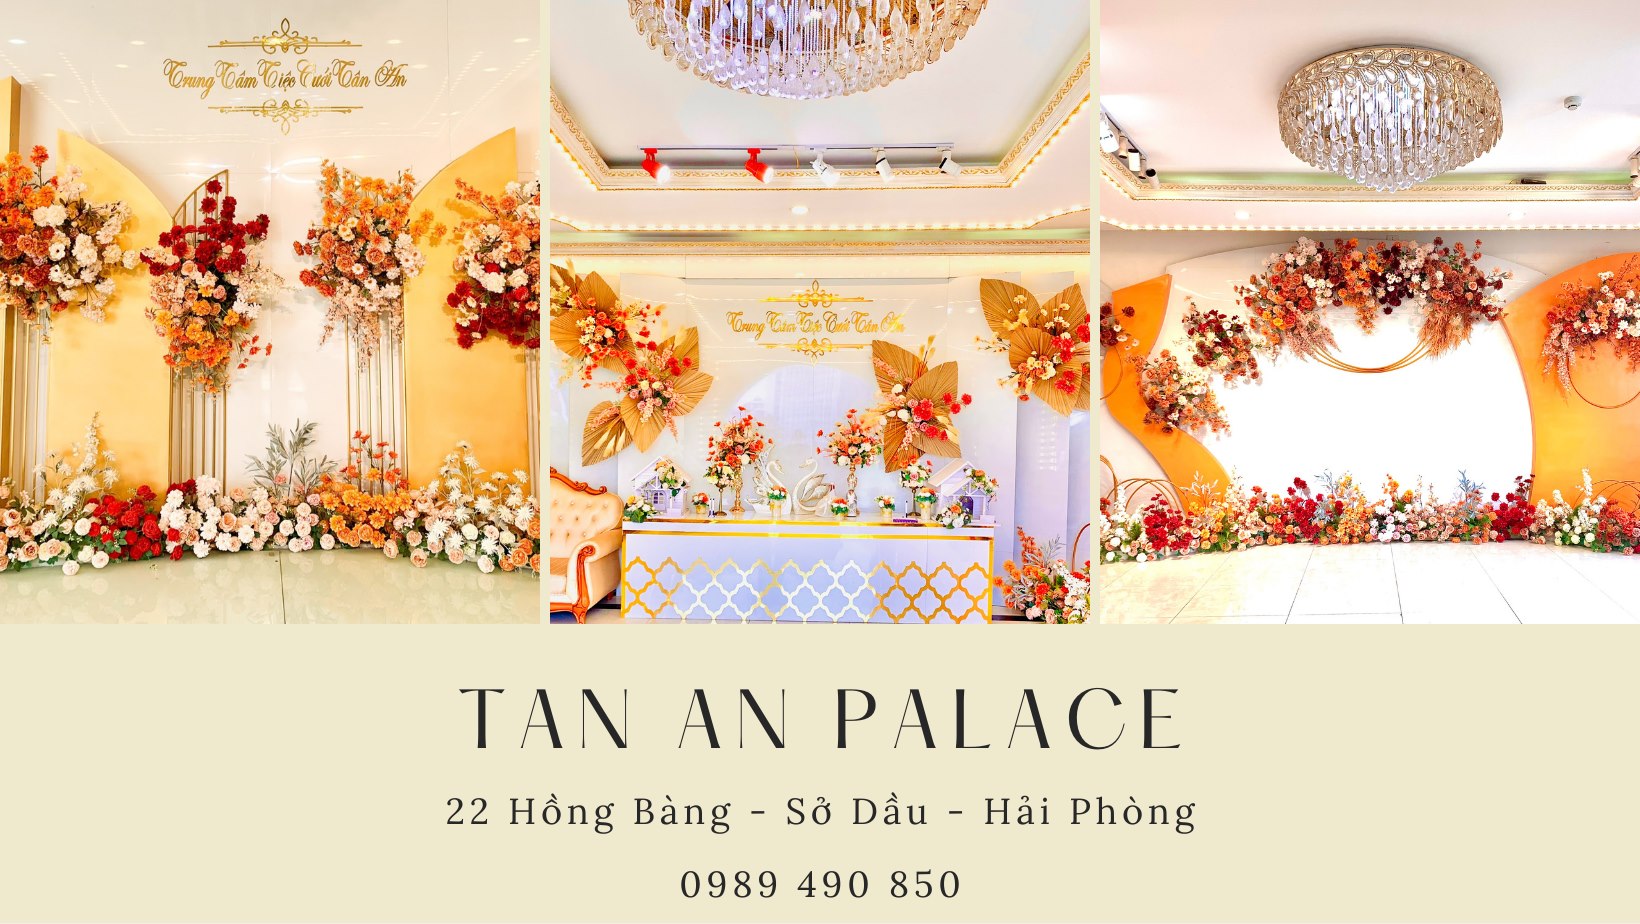 Khách sạn - Trung tâm tiệc cưới Tân An Palace Hải Phòng ảnh 1